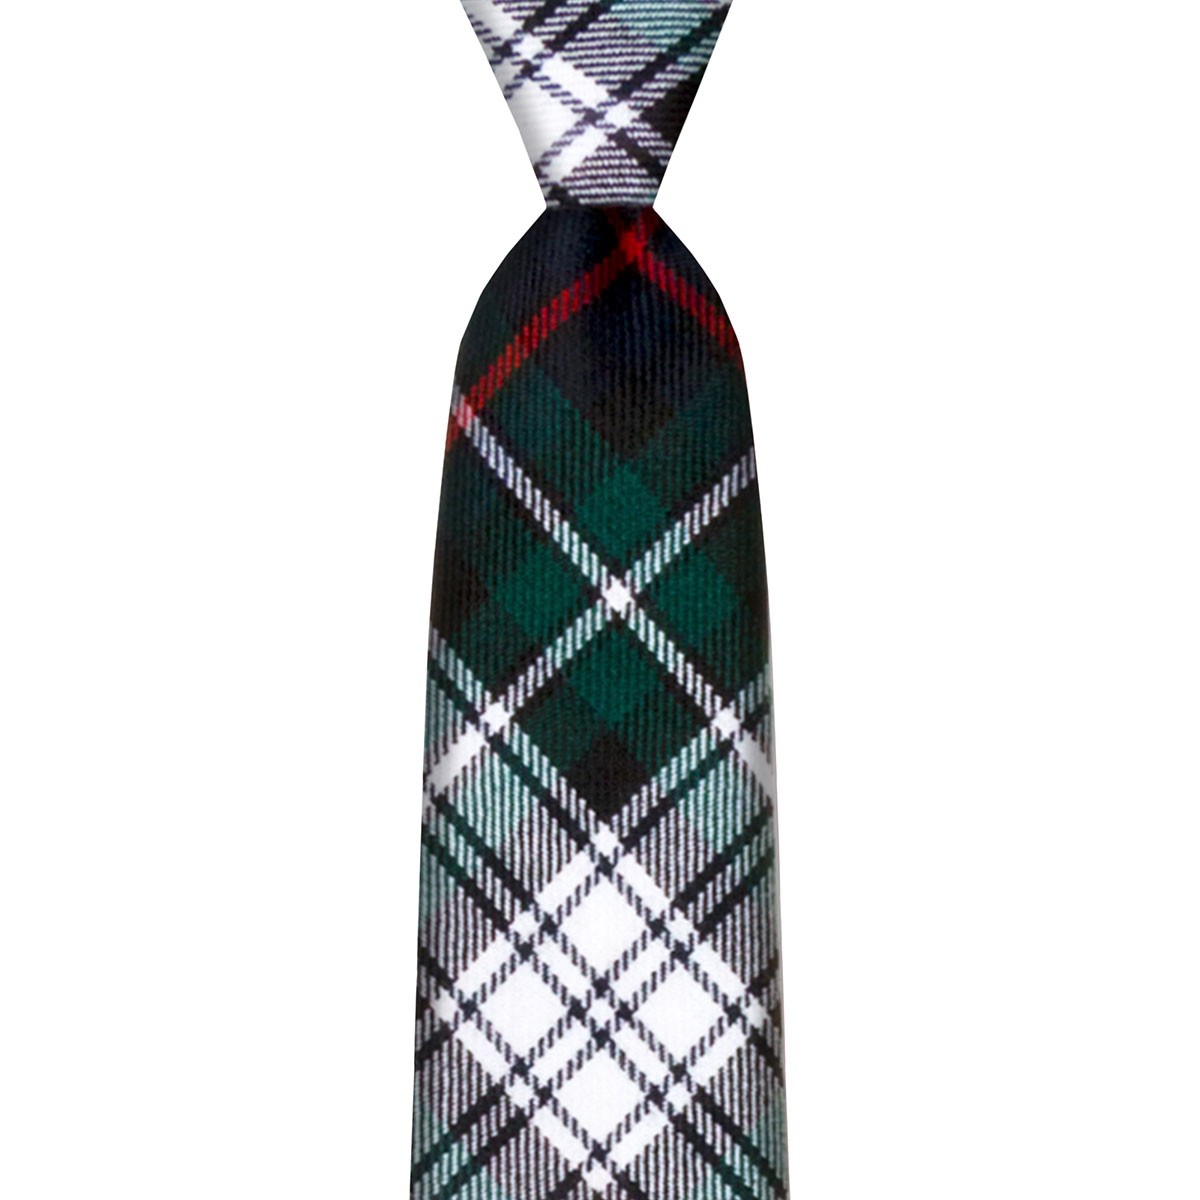 MacKenzie Modern Tartan Spring Weight Premium Wool Neck Tie Made in Scotland